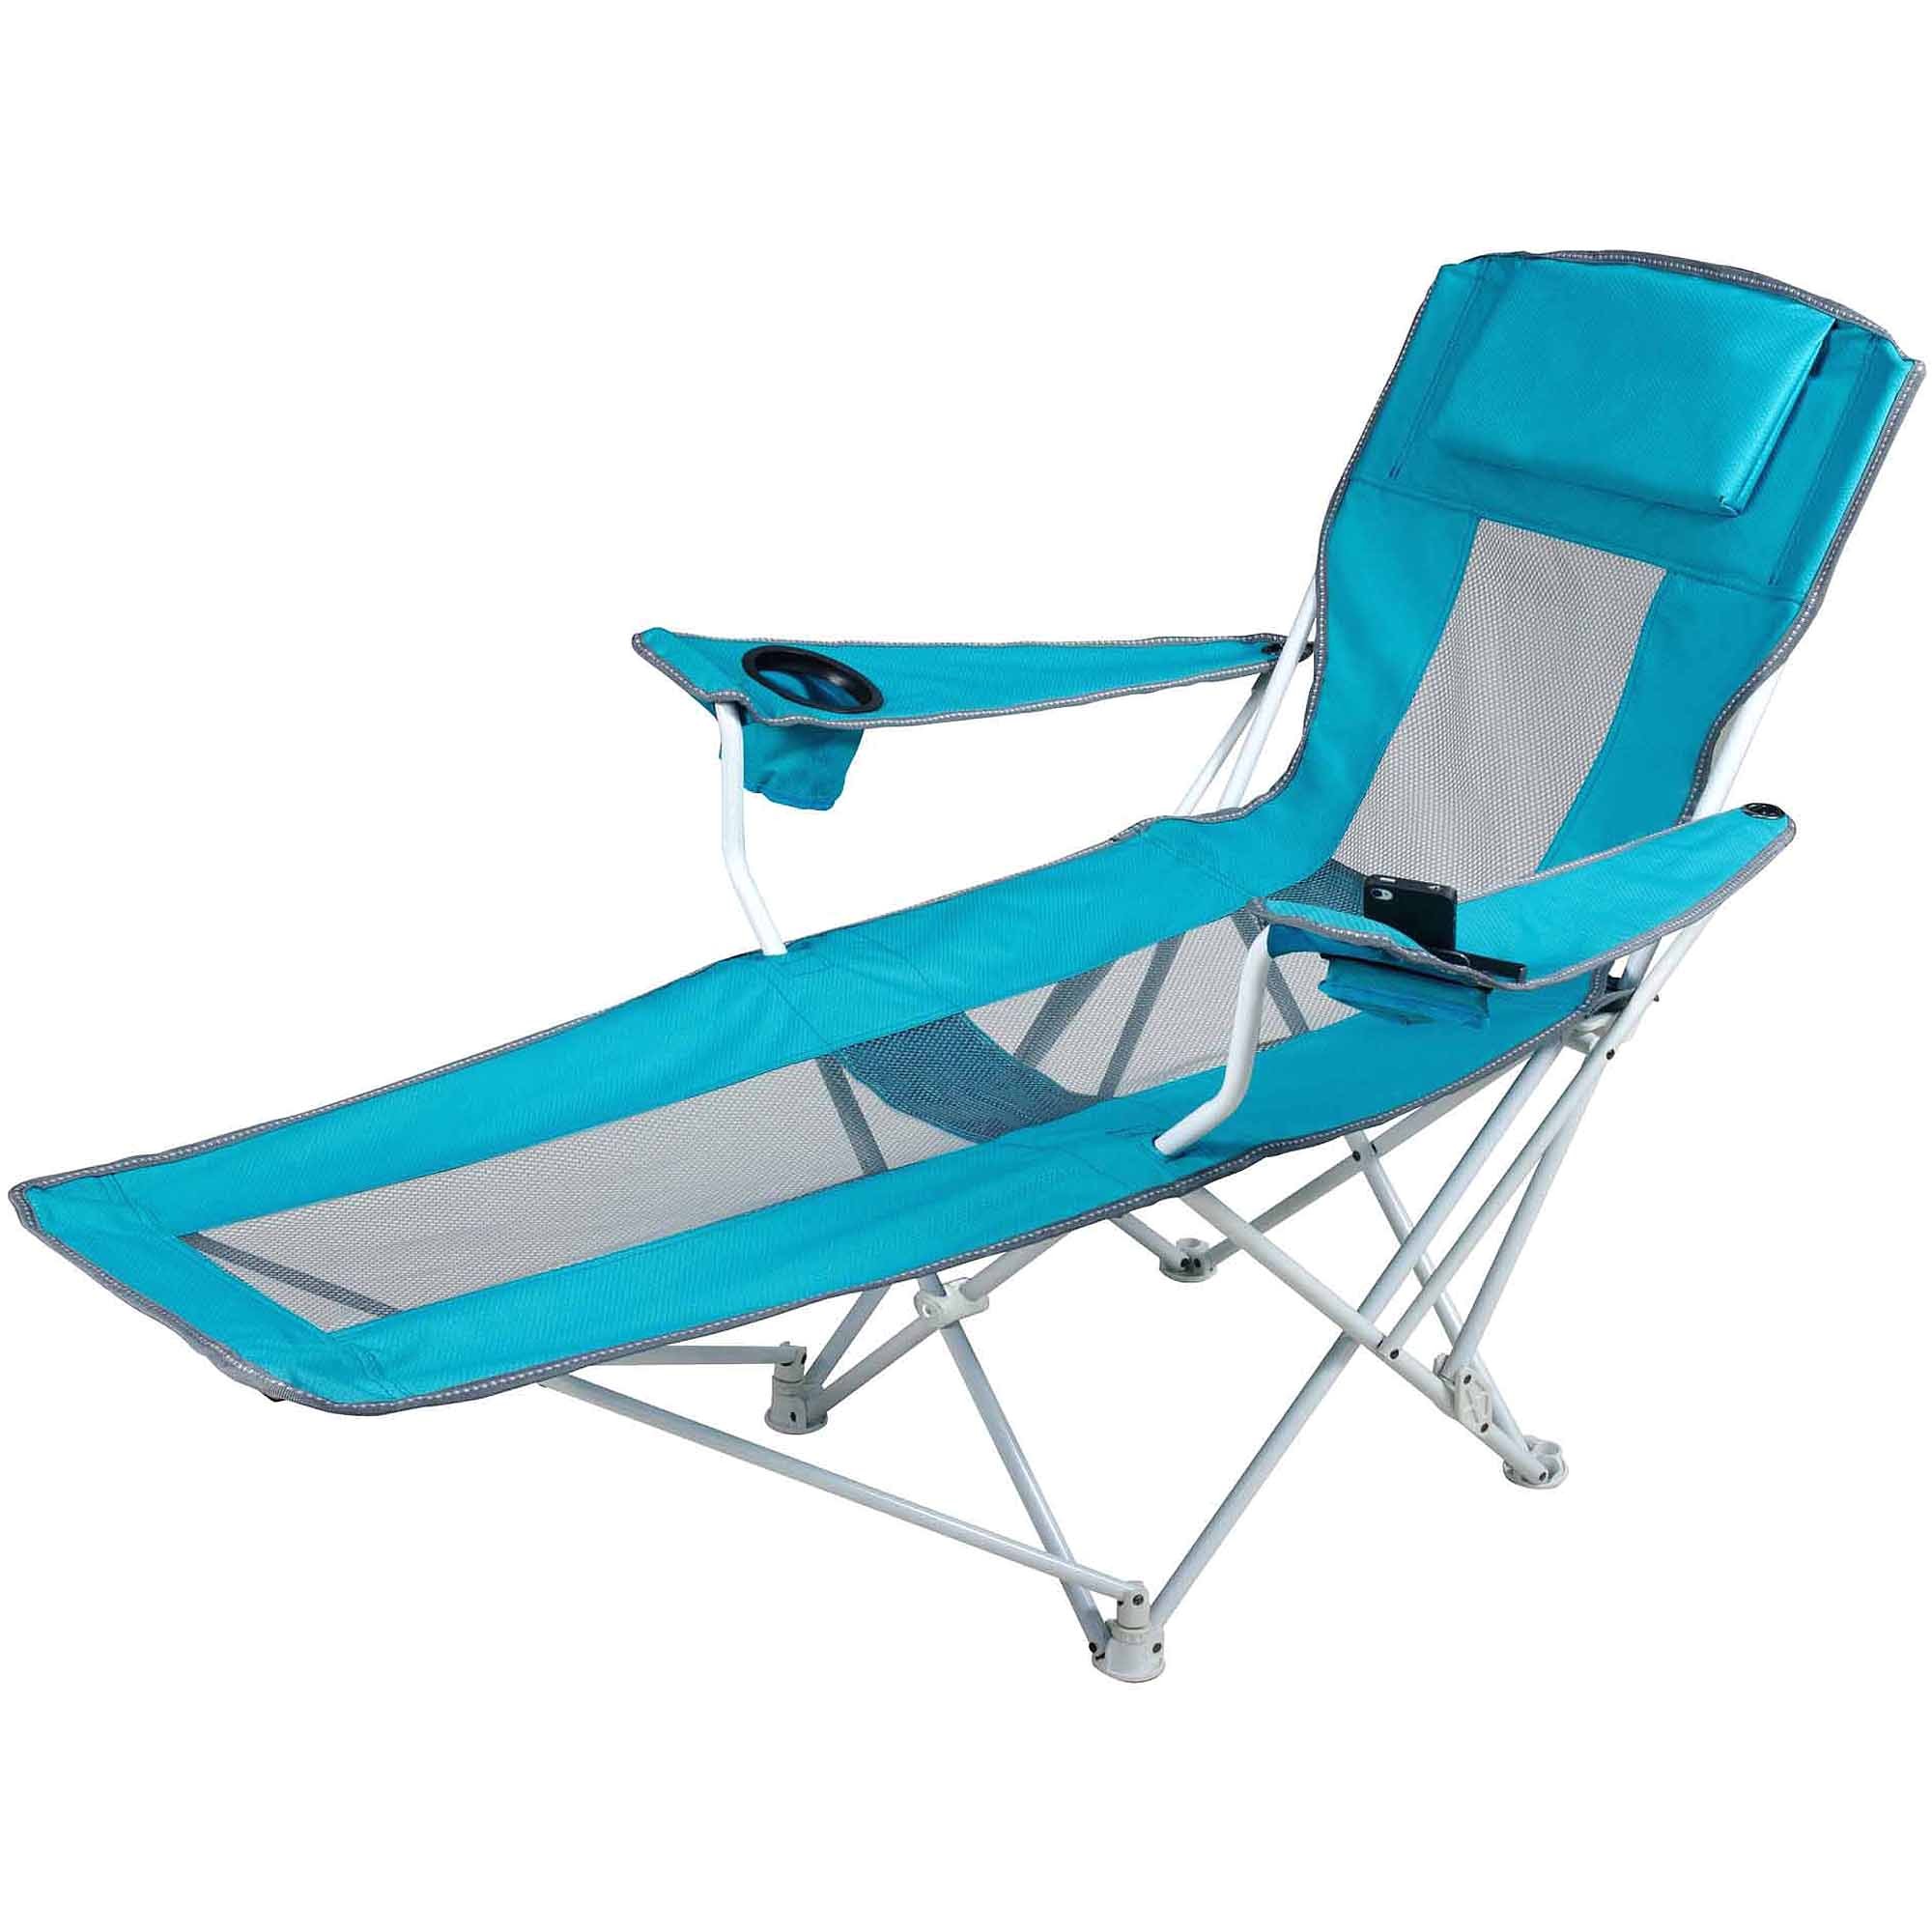 target lounge chairs beach umbrellas at walmart walmart beach chairs